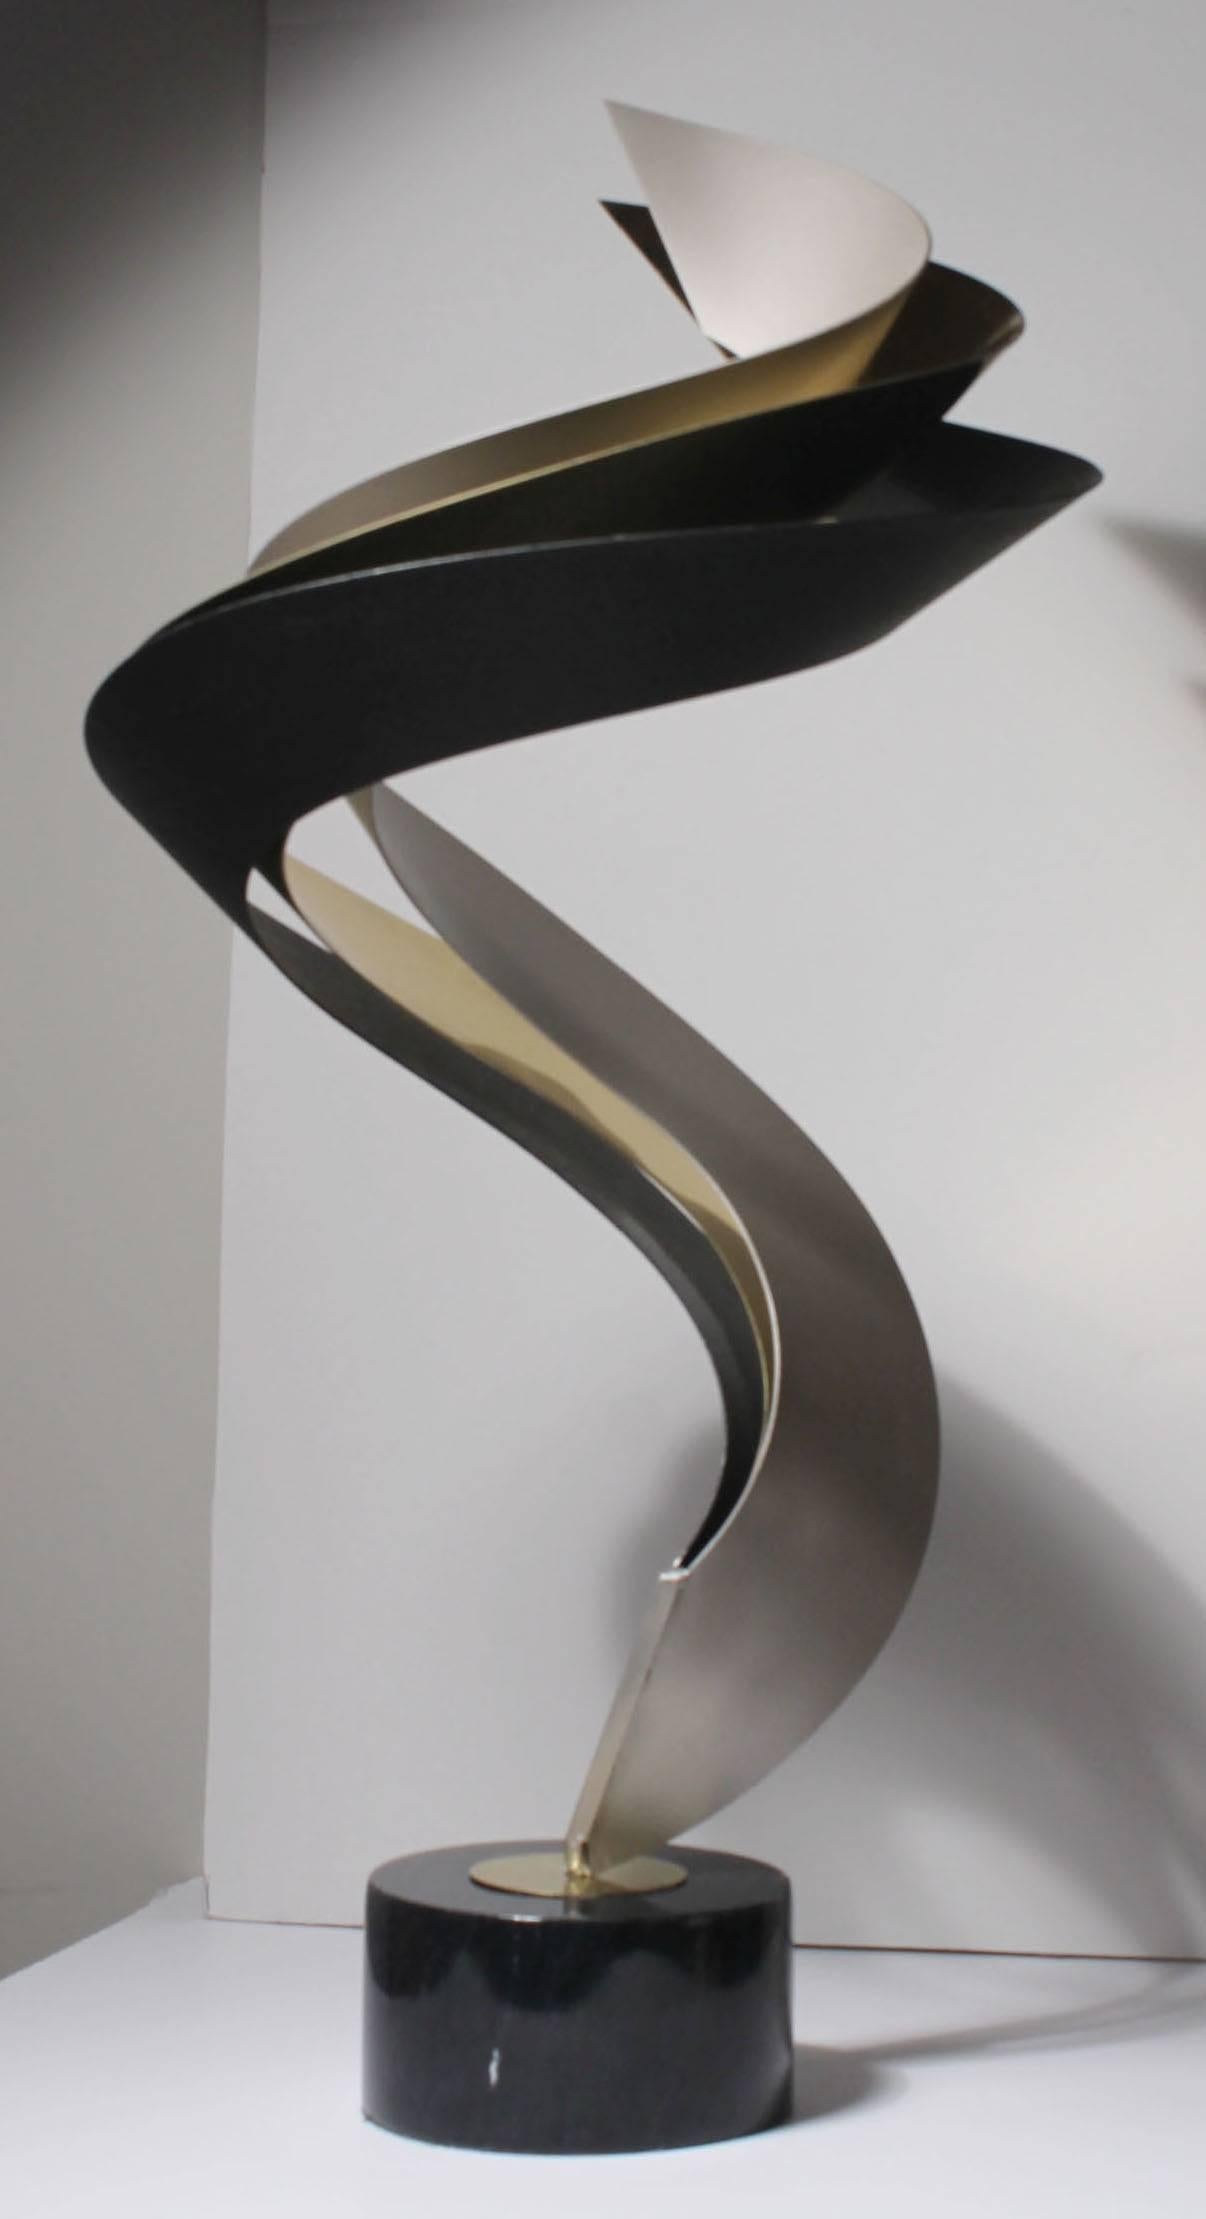 Elégante sculpture d'art de table Jere
Composé de trois finitions métalliques. Noir, laiton et argent mat.
Base en marbre.
Signé et daté (1993) sur la base.

Les dimensions sont approximatives. Veuillez confirmer si vous souhaitez des dimensions